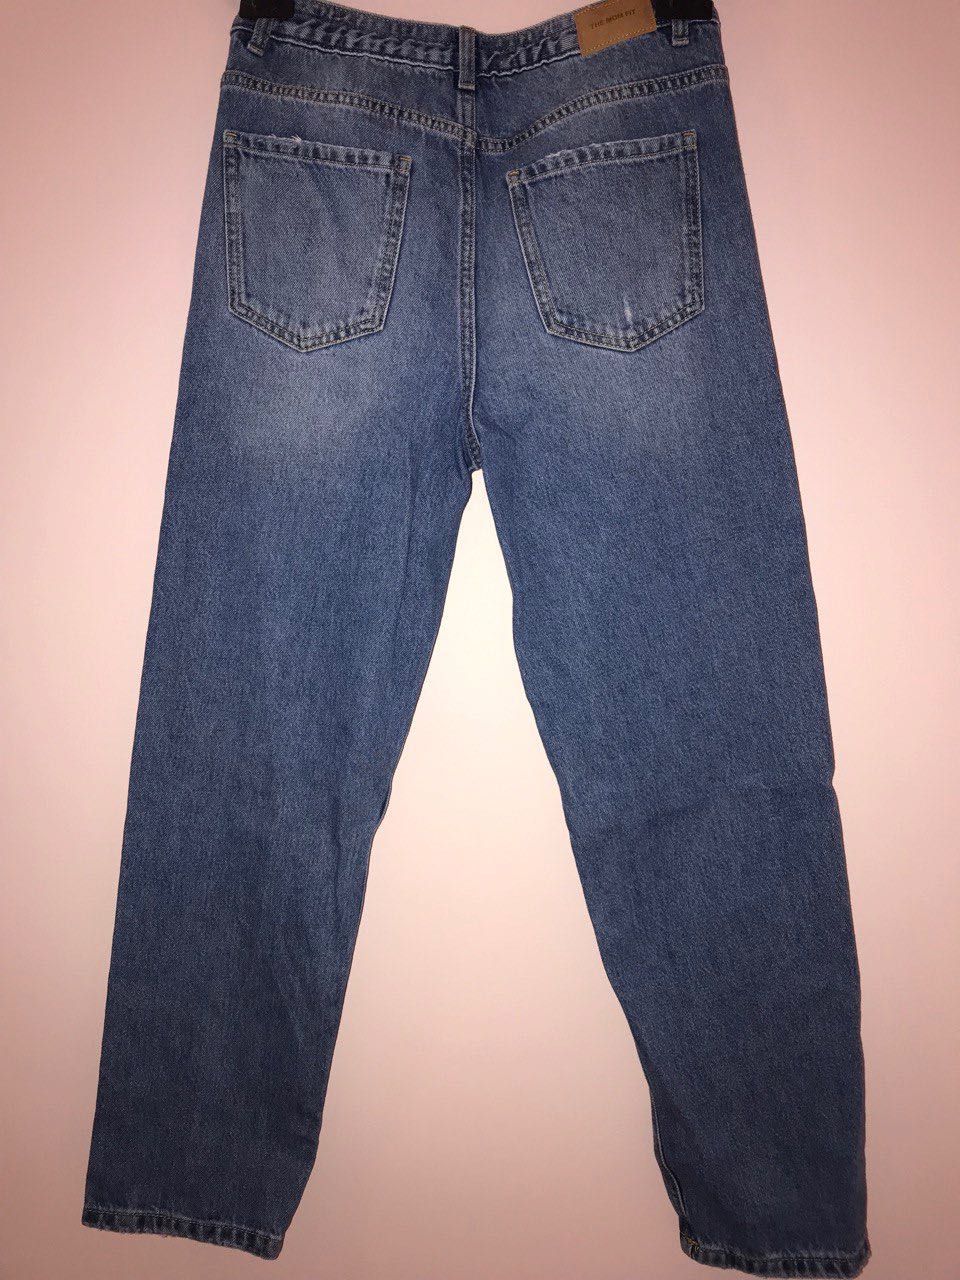 Нові джинси Zara для дівчинки (164 см)